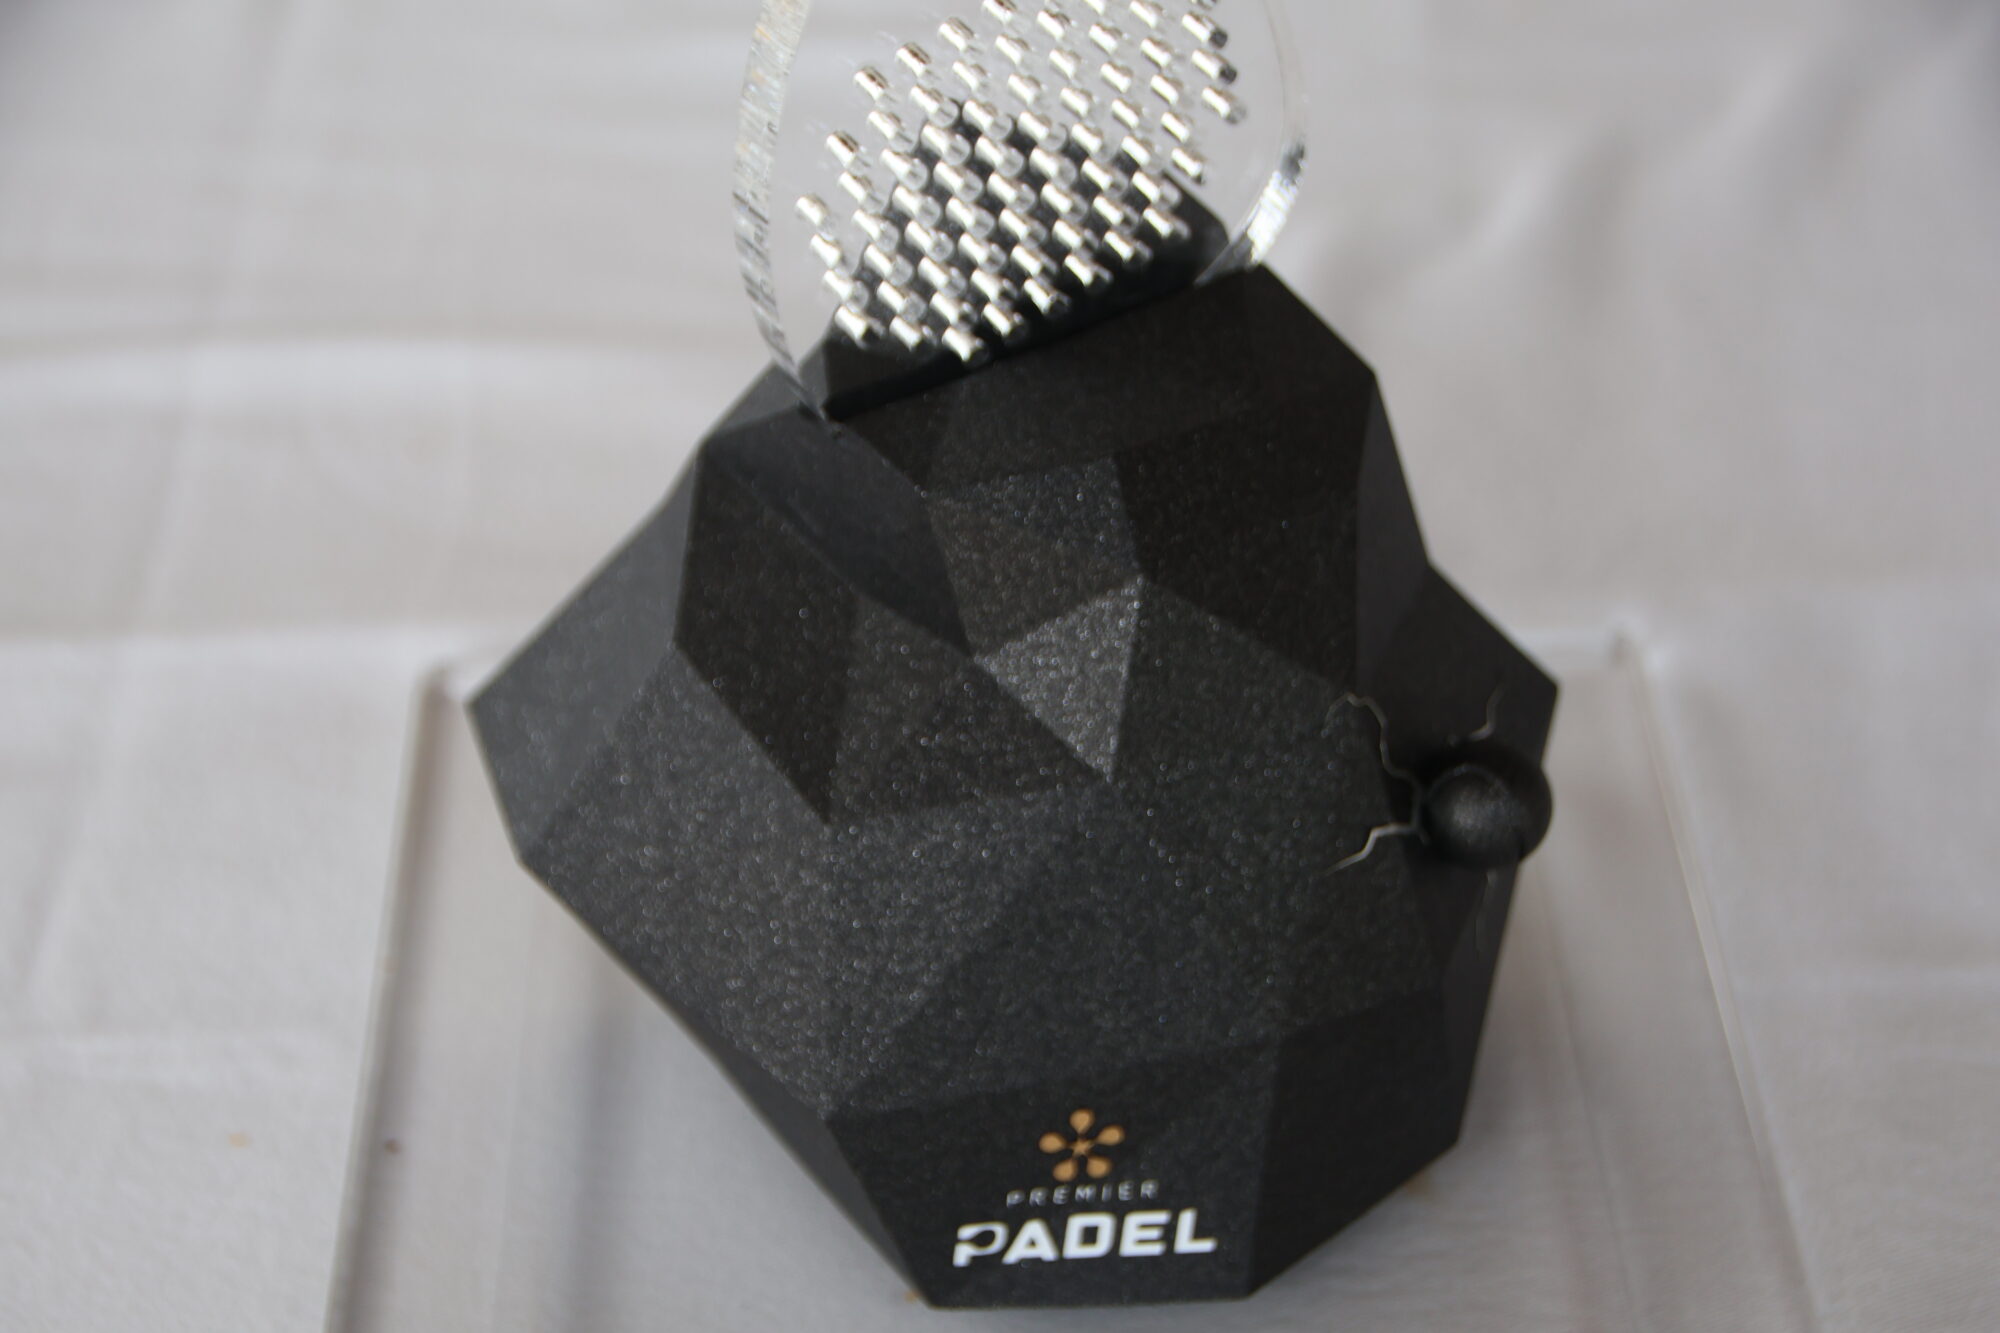 Bordeaux Premier Padel P2 dévoile un show et un trophée en mode “Excalibur”